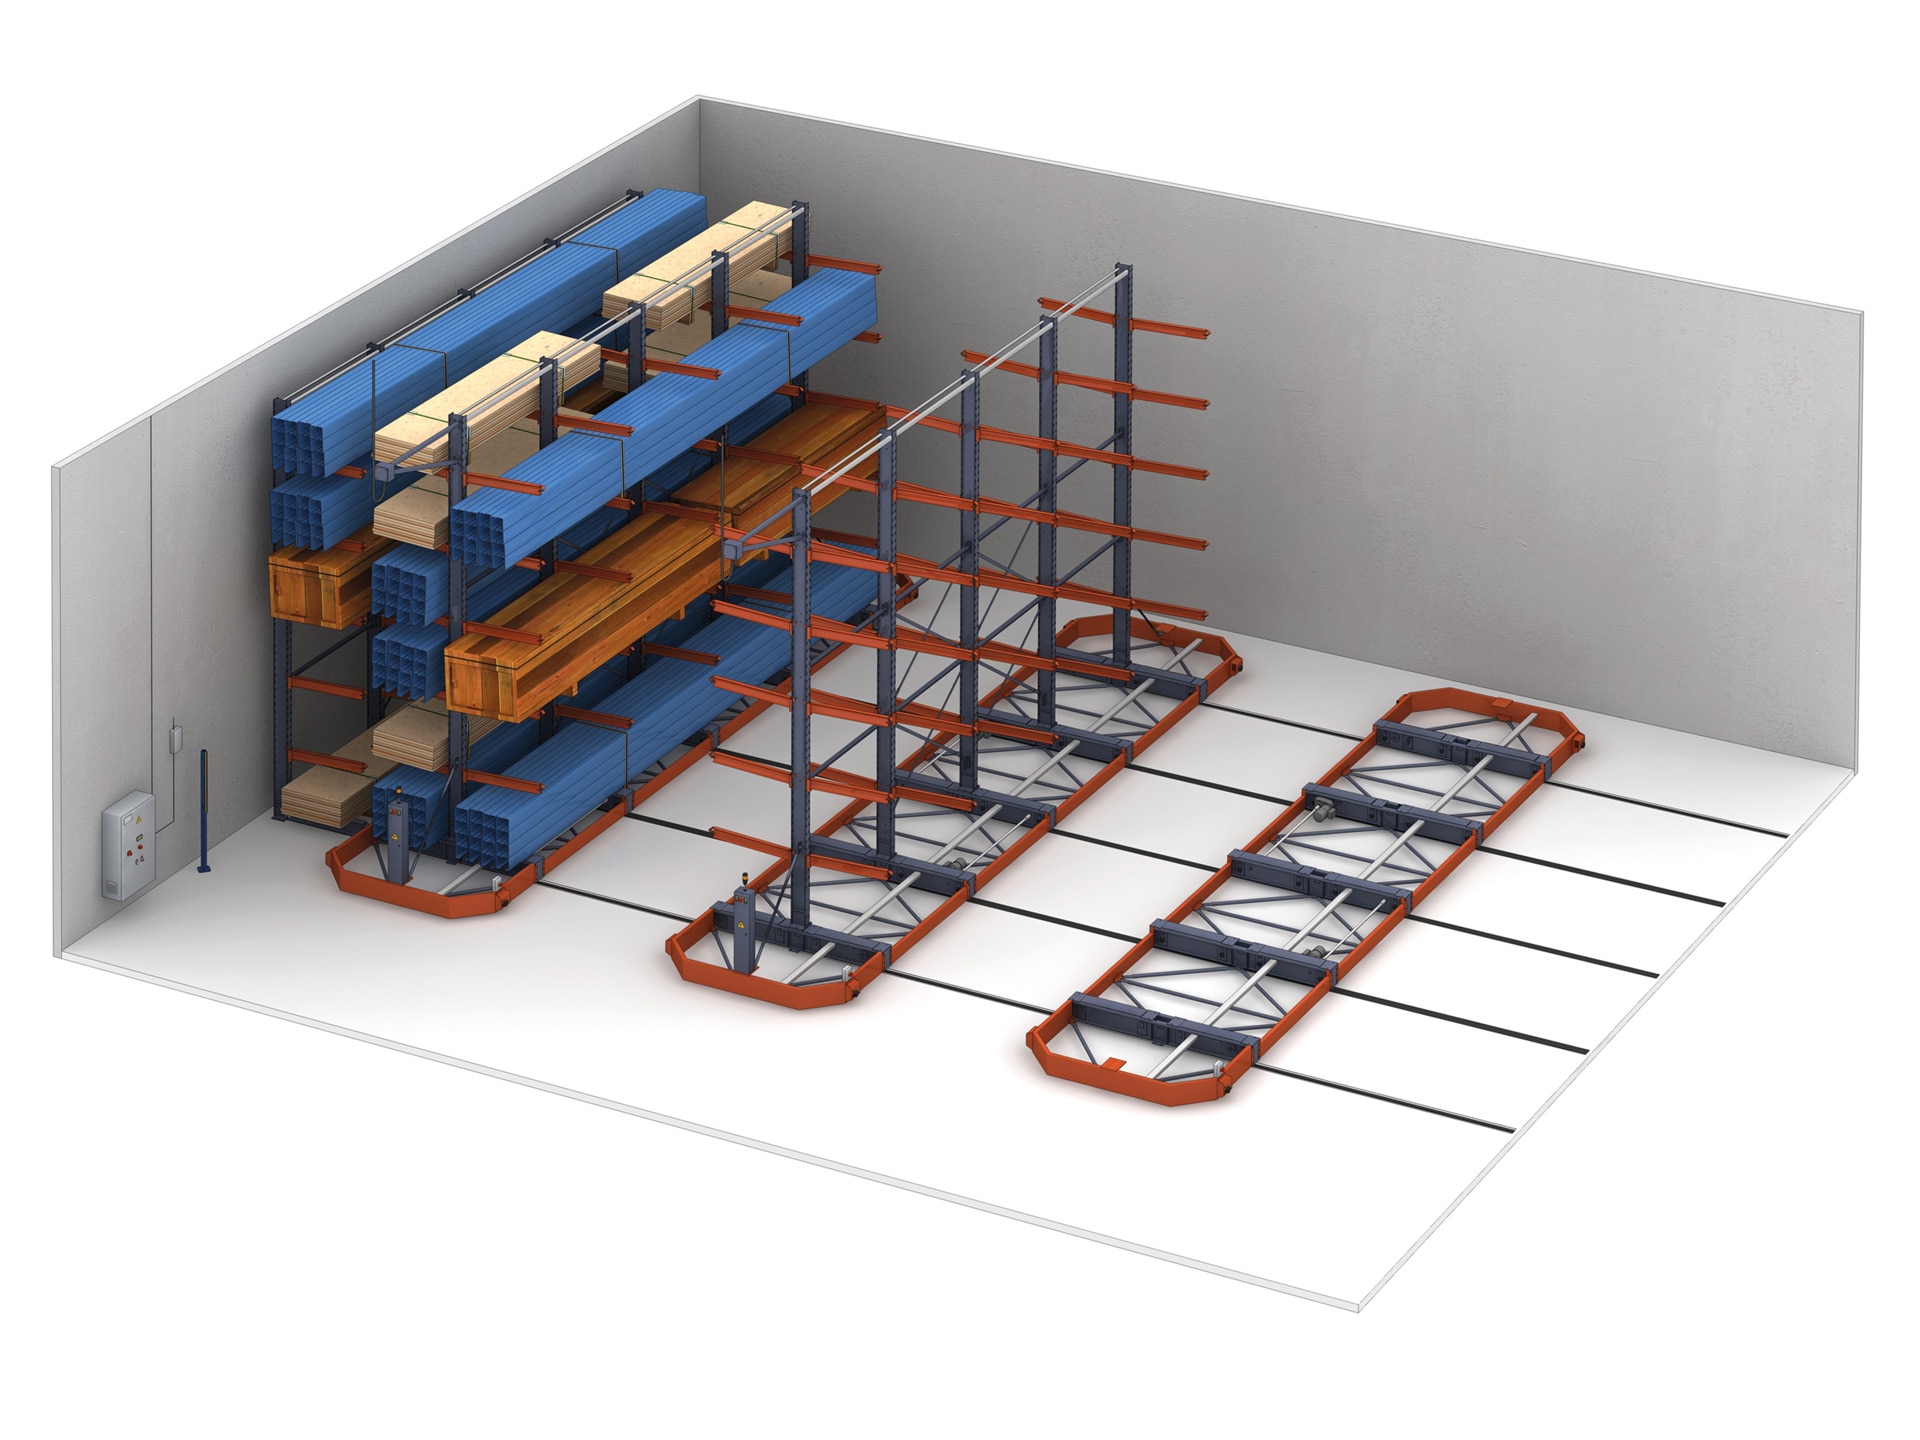 Podem ser instalados onze porta-paletes cantilever sobre bases móveis para armazenar cargas longas e volumosas